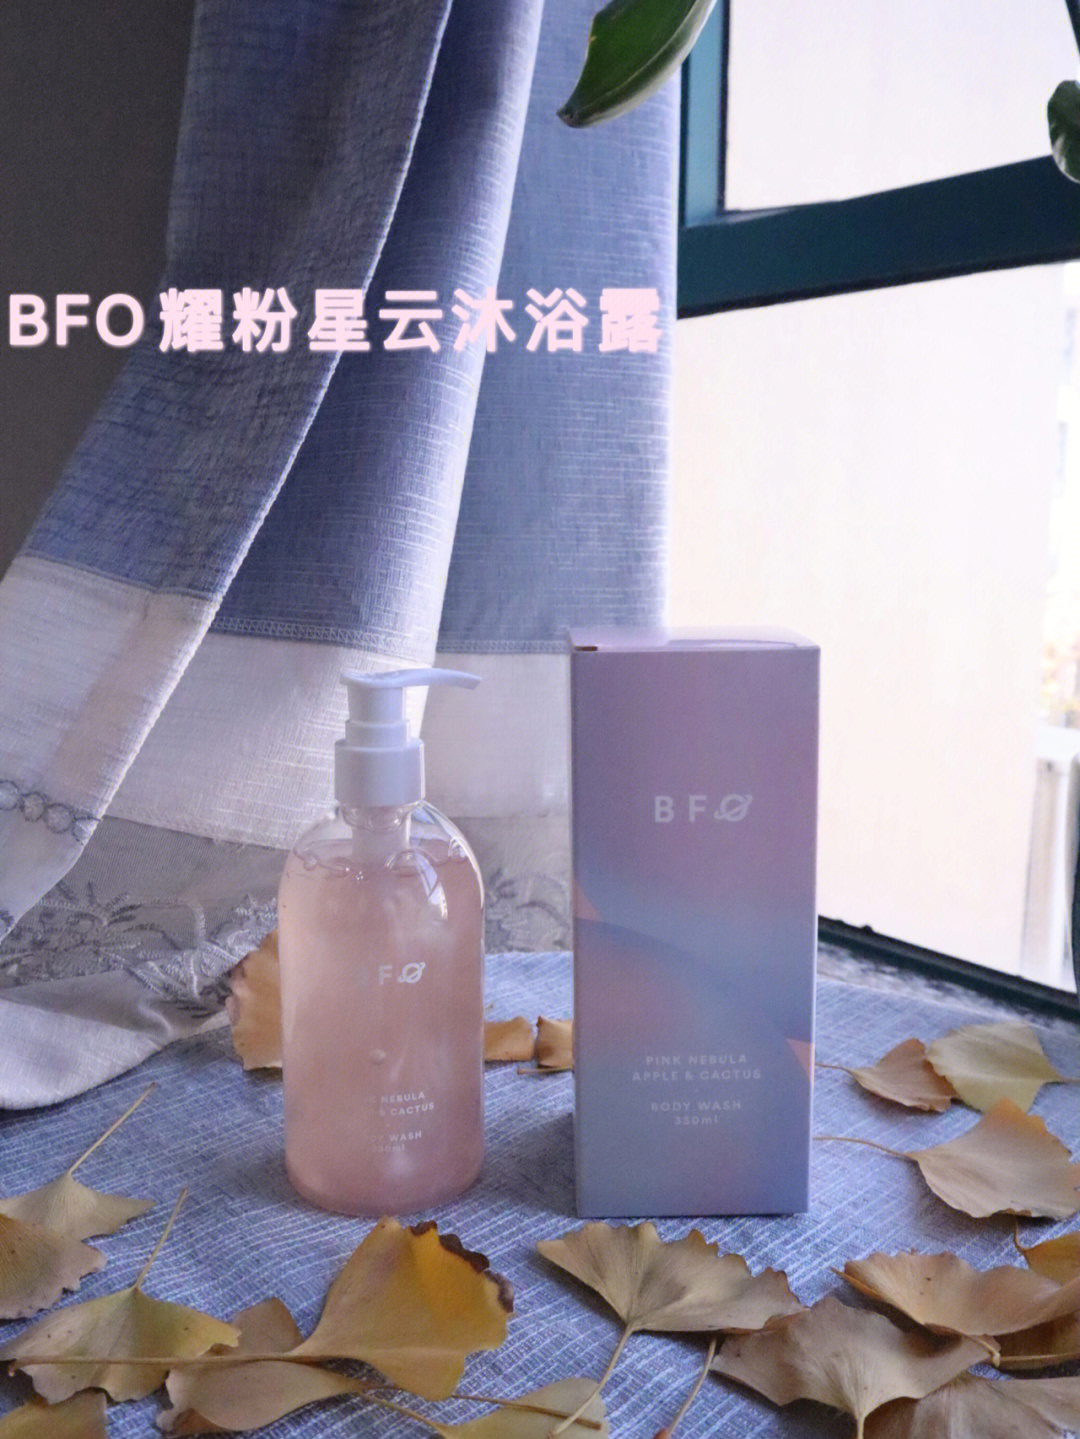 bfo淡粉樱色料体 可溶性云母,有种低调奢华的感觉0皂基,氨基酸复合